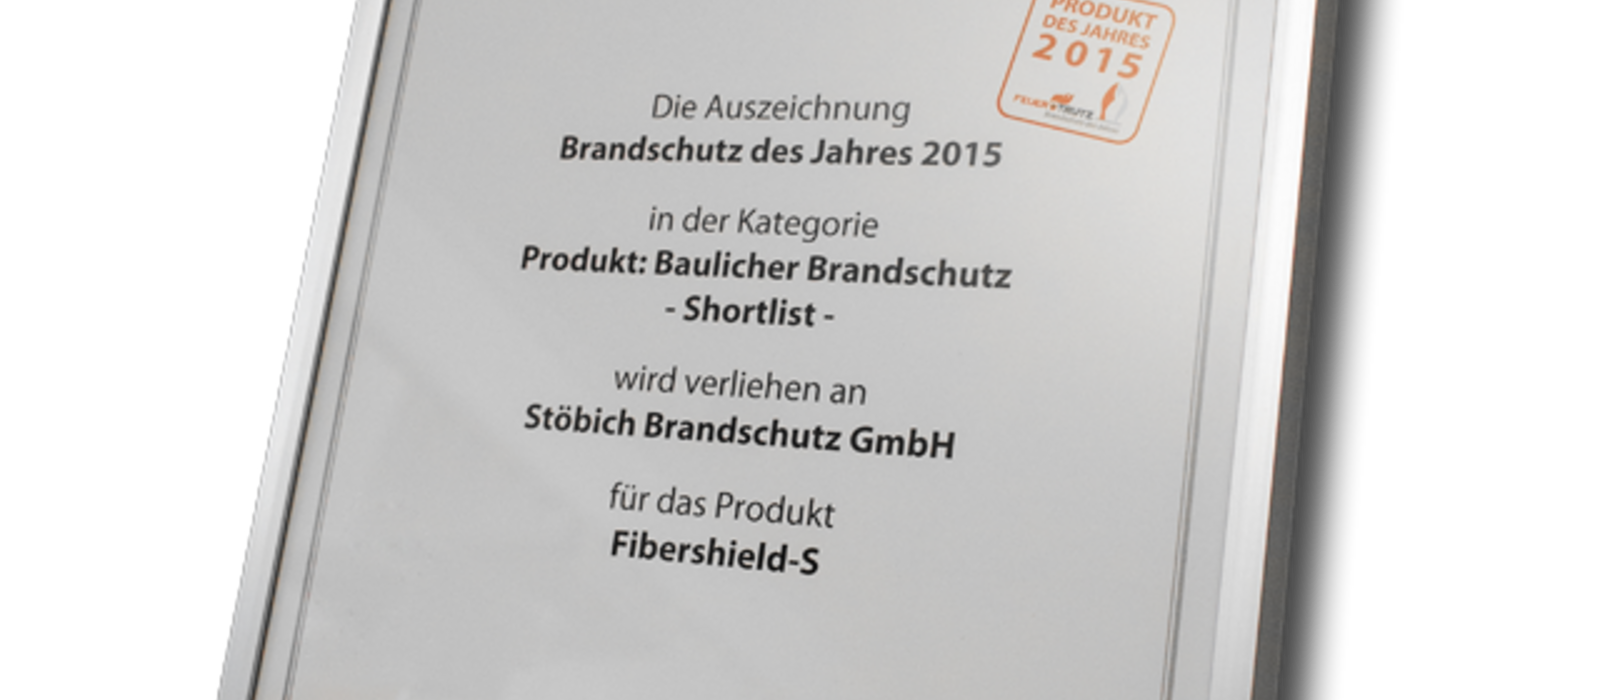 Textilní požární uzávěry (rolety) společnosti Stöbich byly nominovány do German Design Award